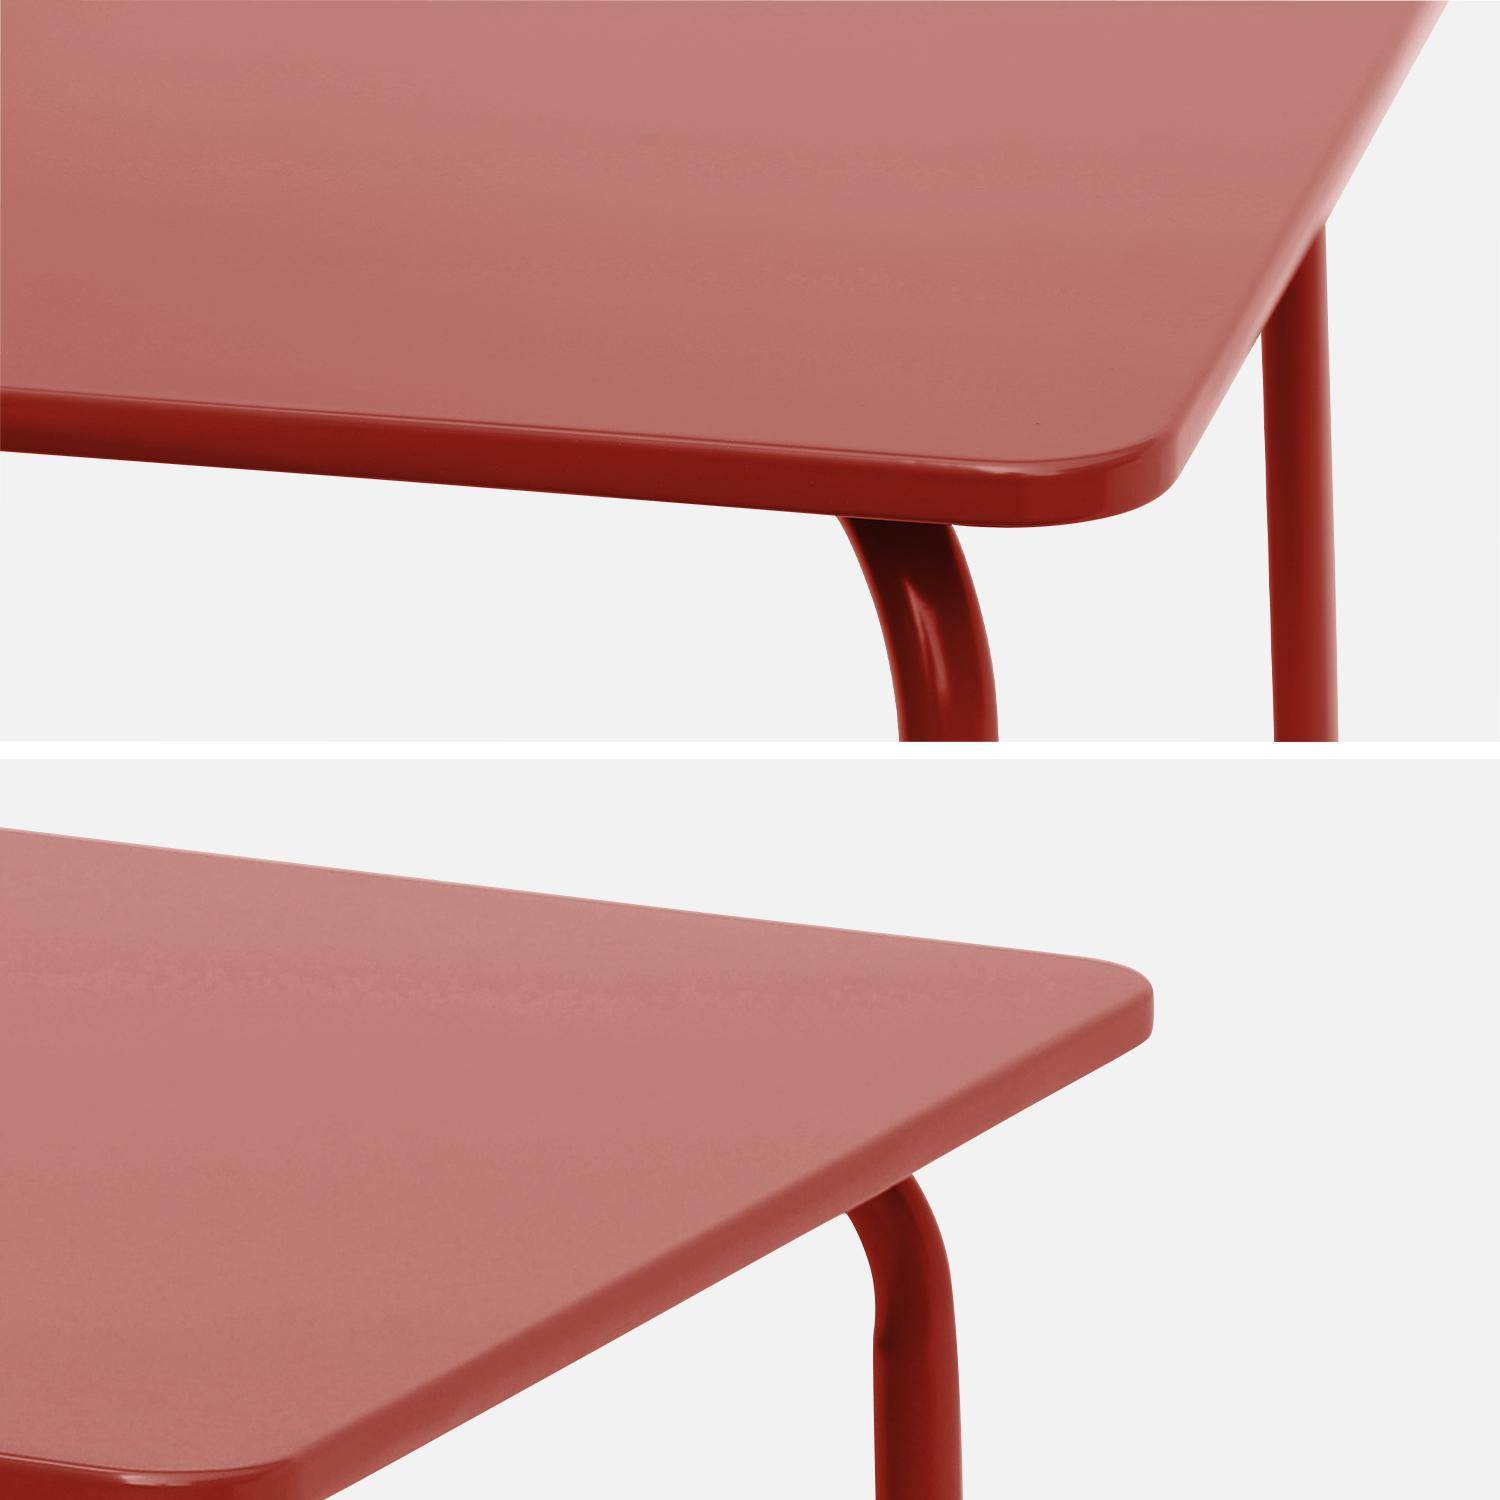 Tisch 48x48cm und 2 Stühle für Kinder, terrakotta, 48x48cm, für draußen verwendbar - Anna,sweeek,Photo8